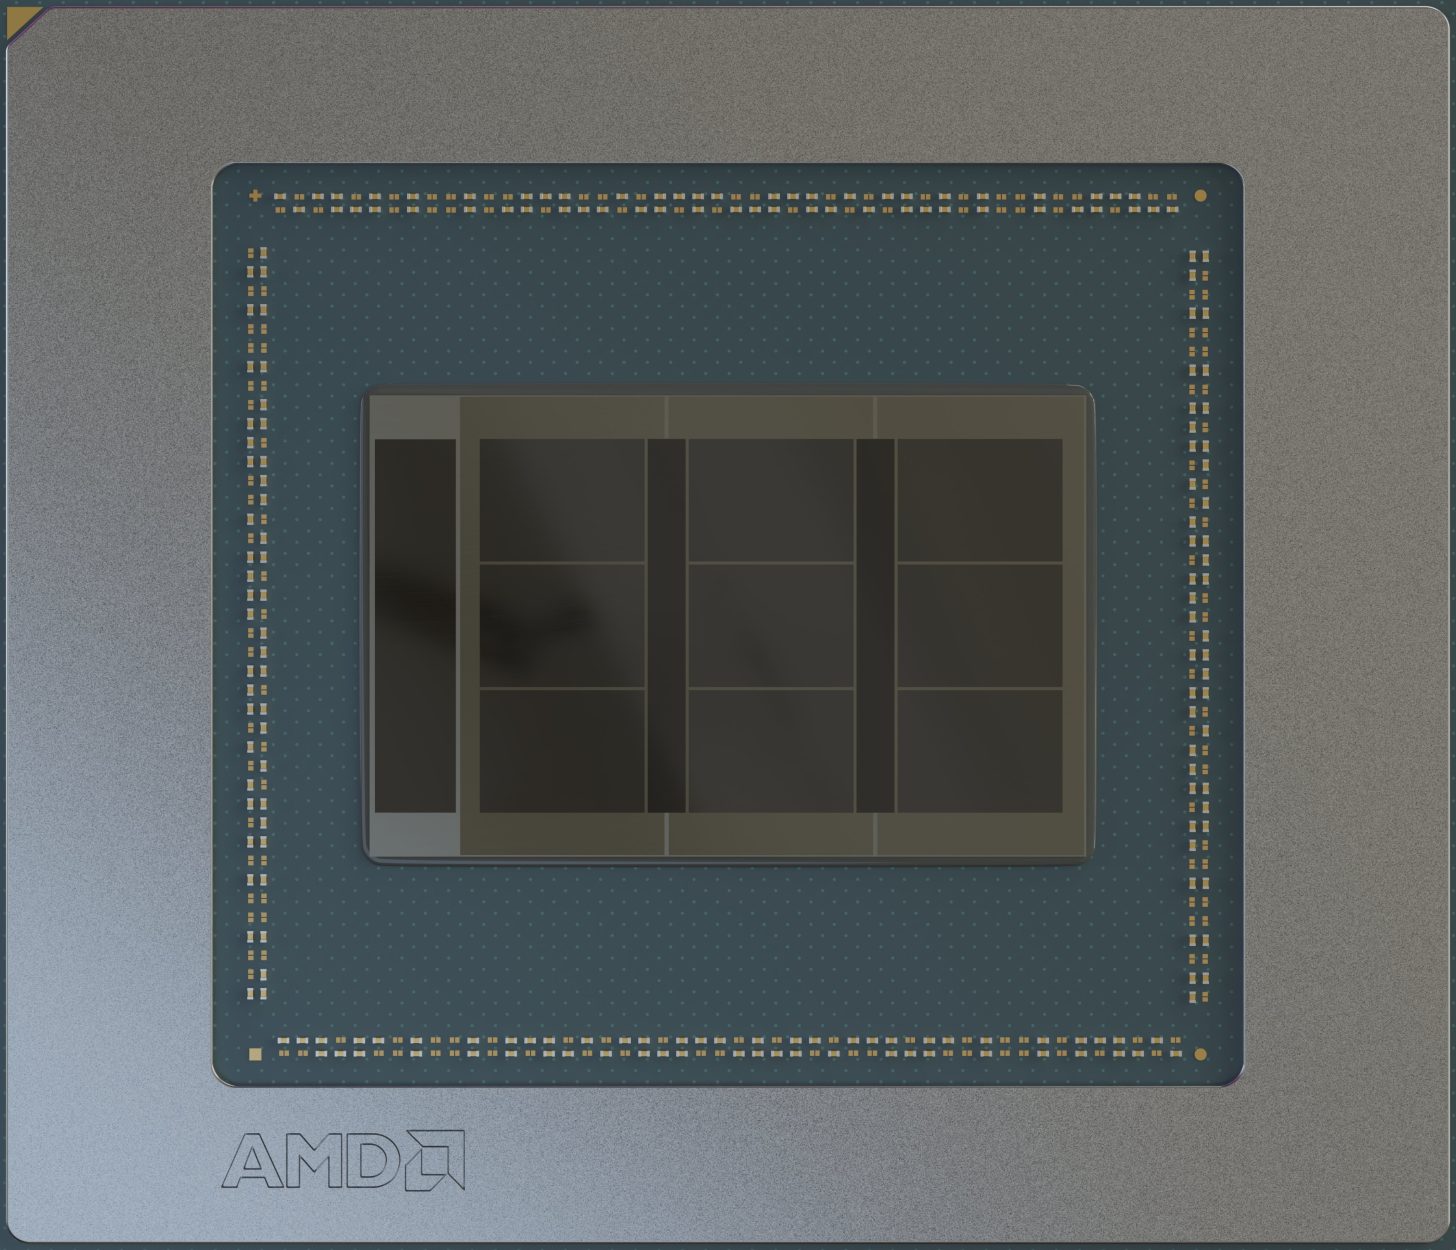 پردازنده‌های گرافیکی پیشرفته Navi 4X RDNA 4 AMD دارای 9 موتور شیدر هستند